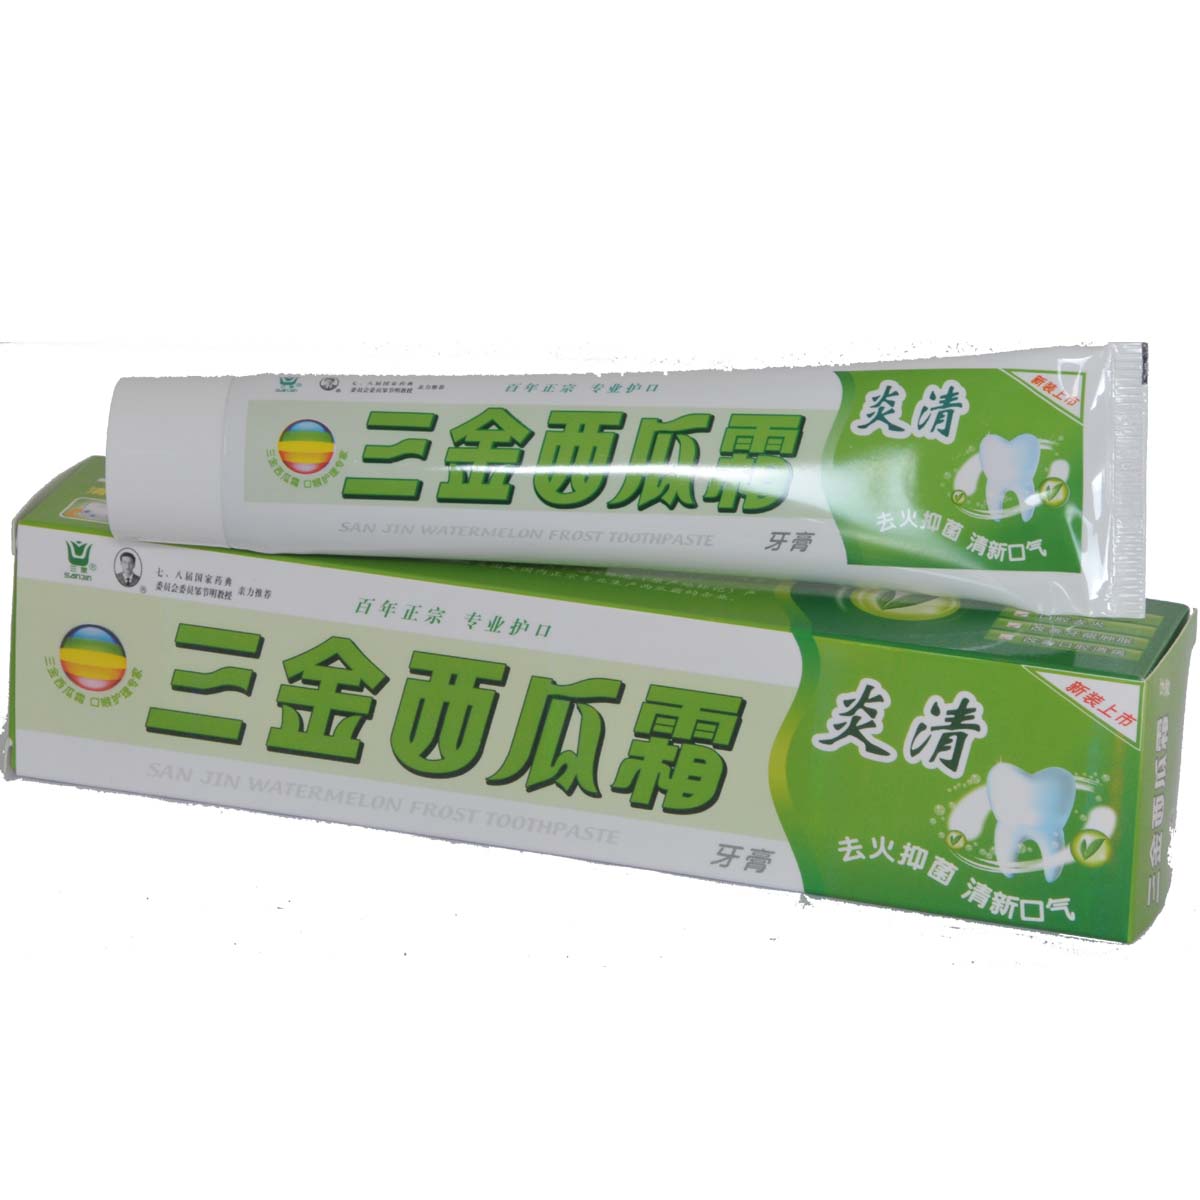 三金西瓜霜-炎清牙膏